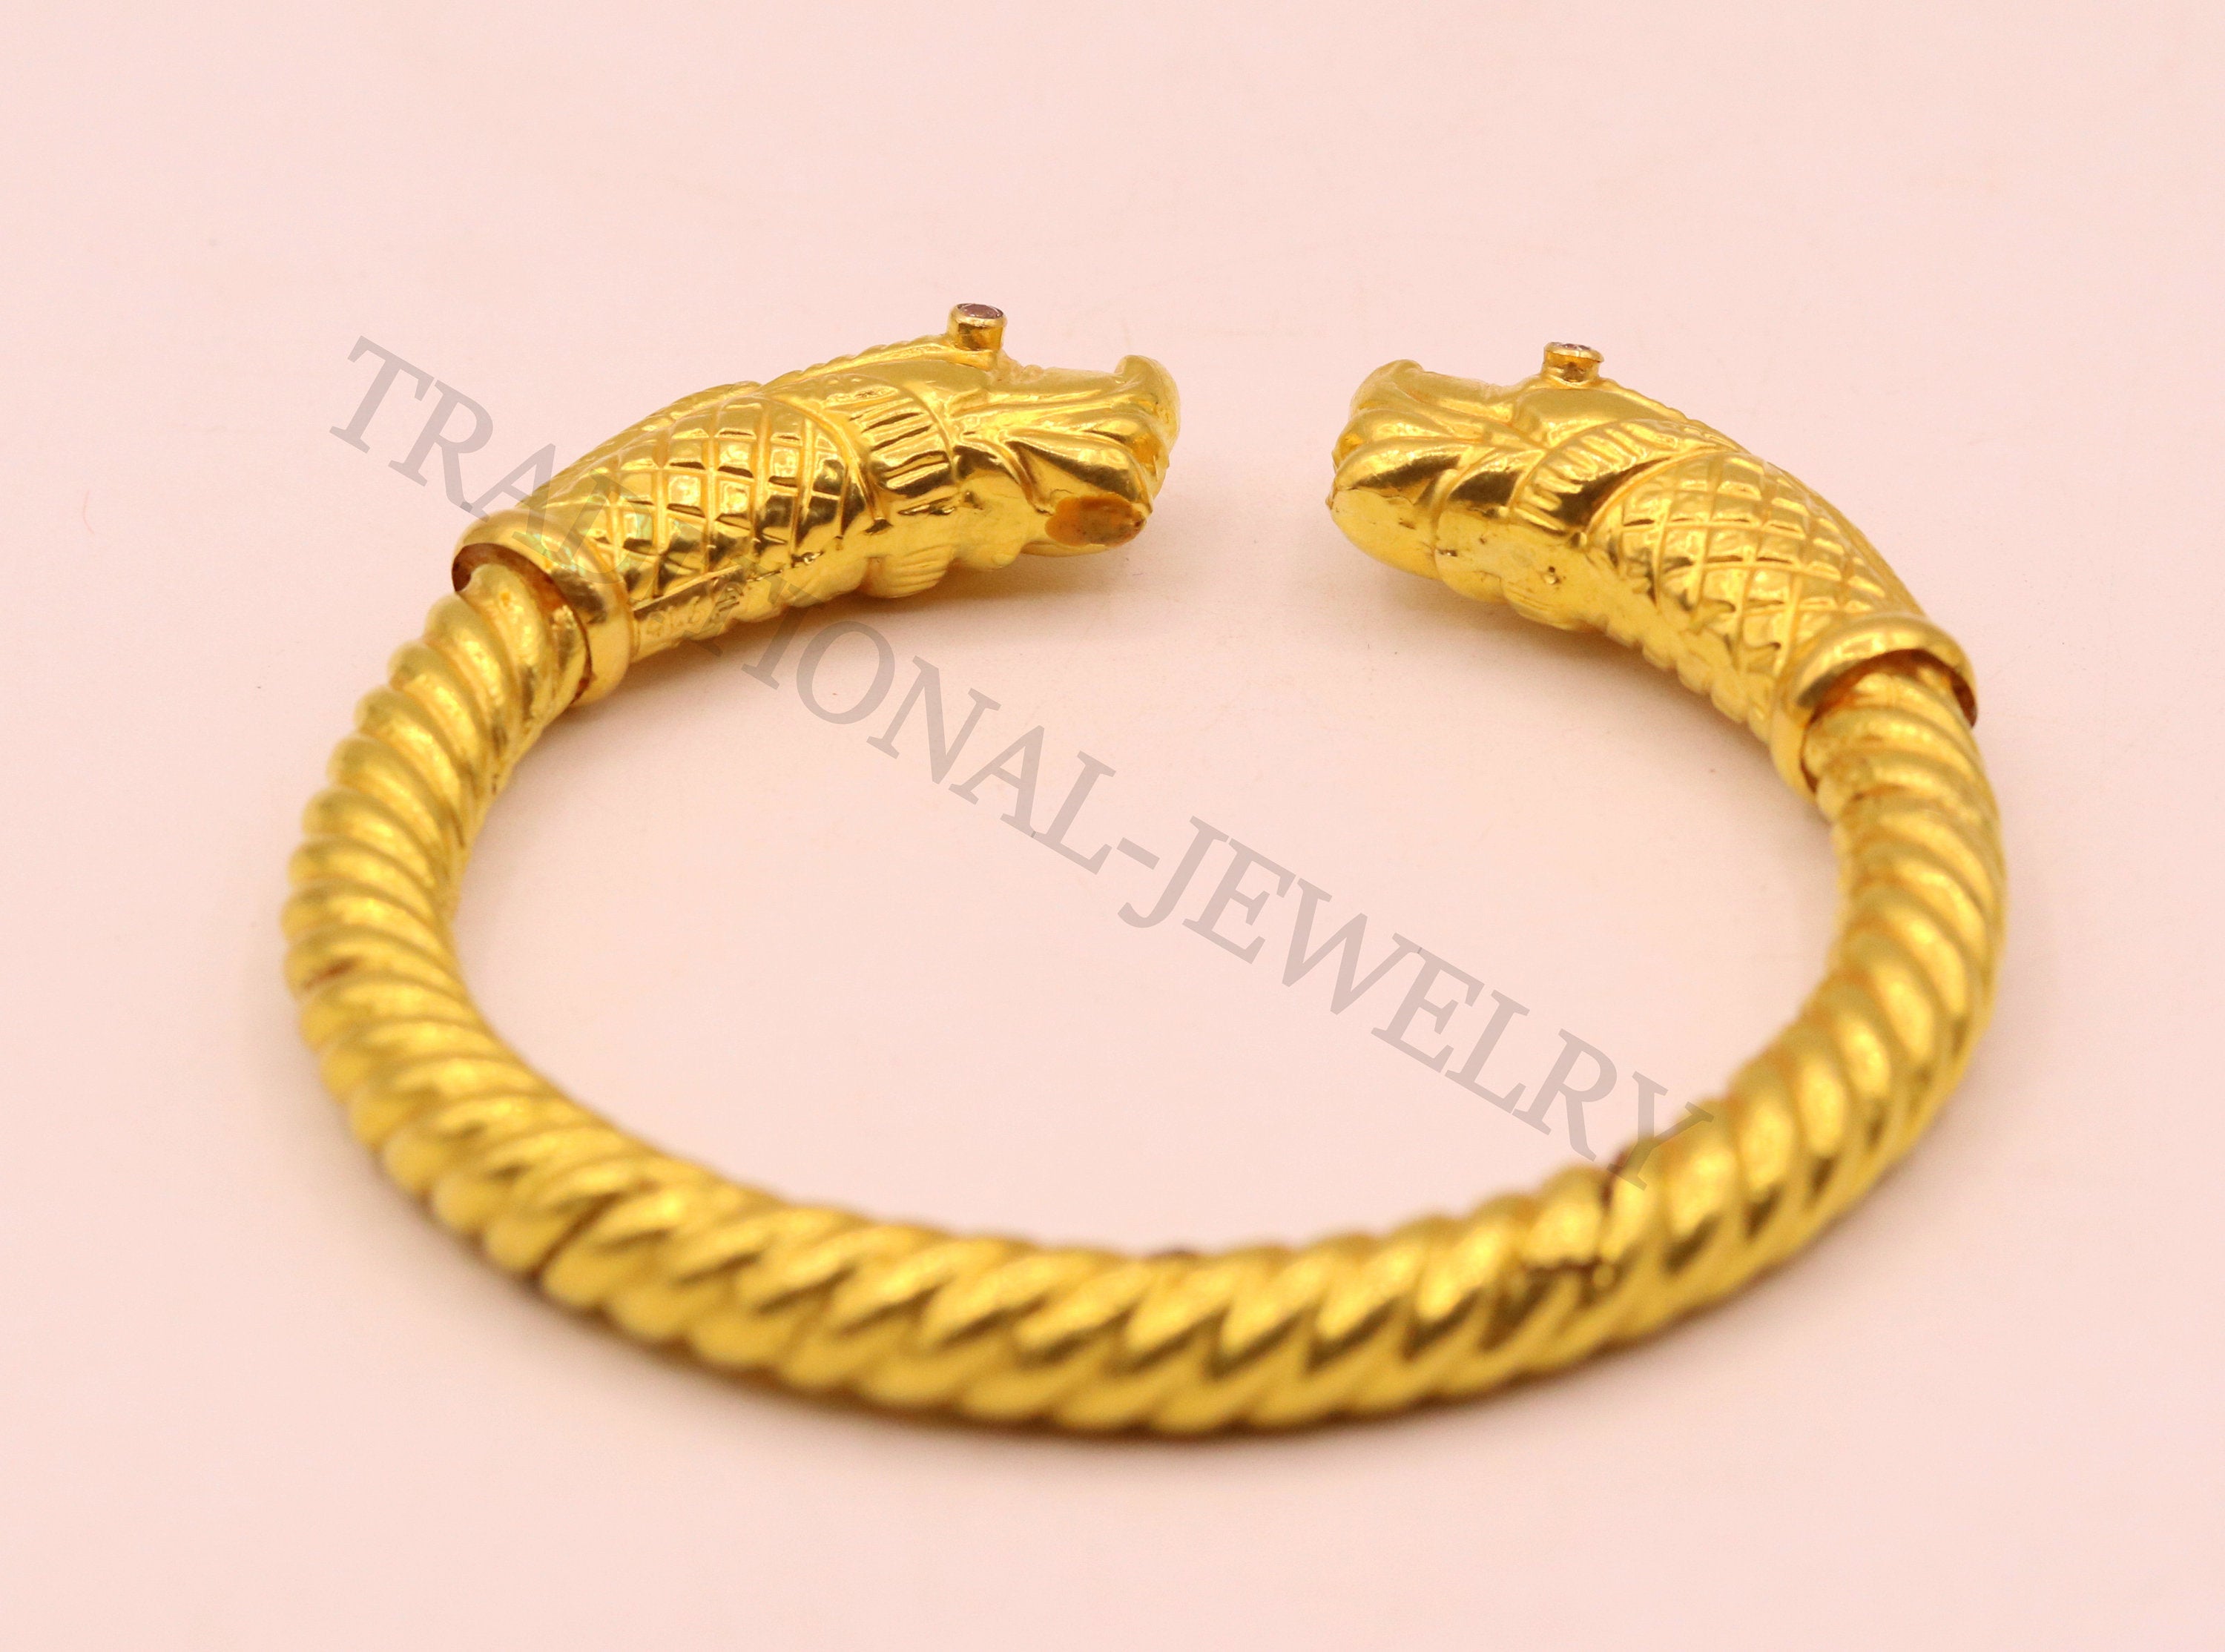 Designer Platinum & Rose Gold Bracelet for Men JL PTB 1080